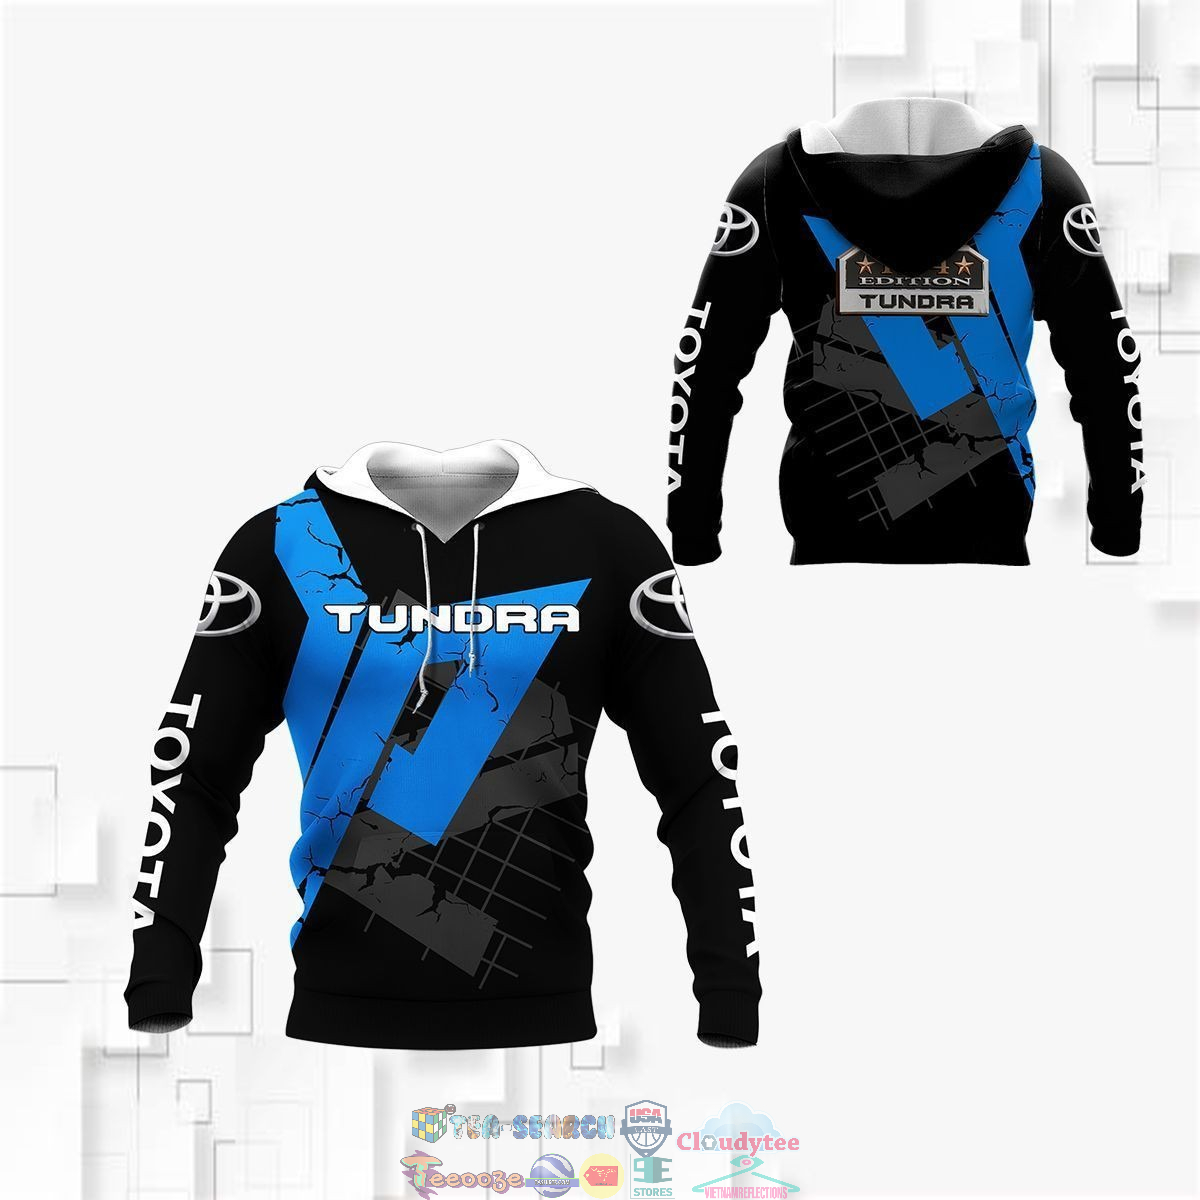 yR5j2Ysa-TH030822-19xxxToyota-Tundra-ver-5-3D-hoodie-and-t-shirt3.jpg